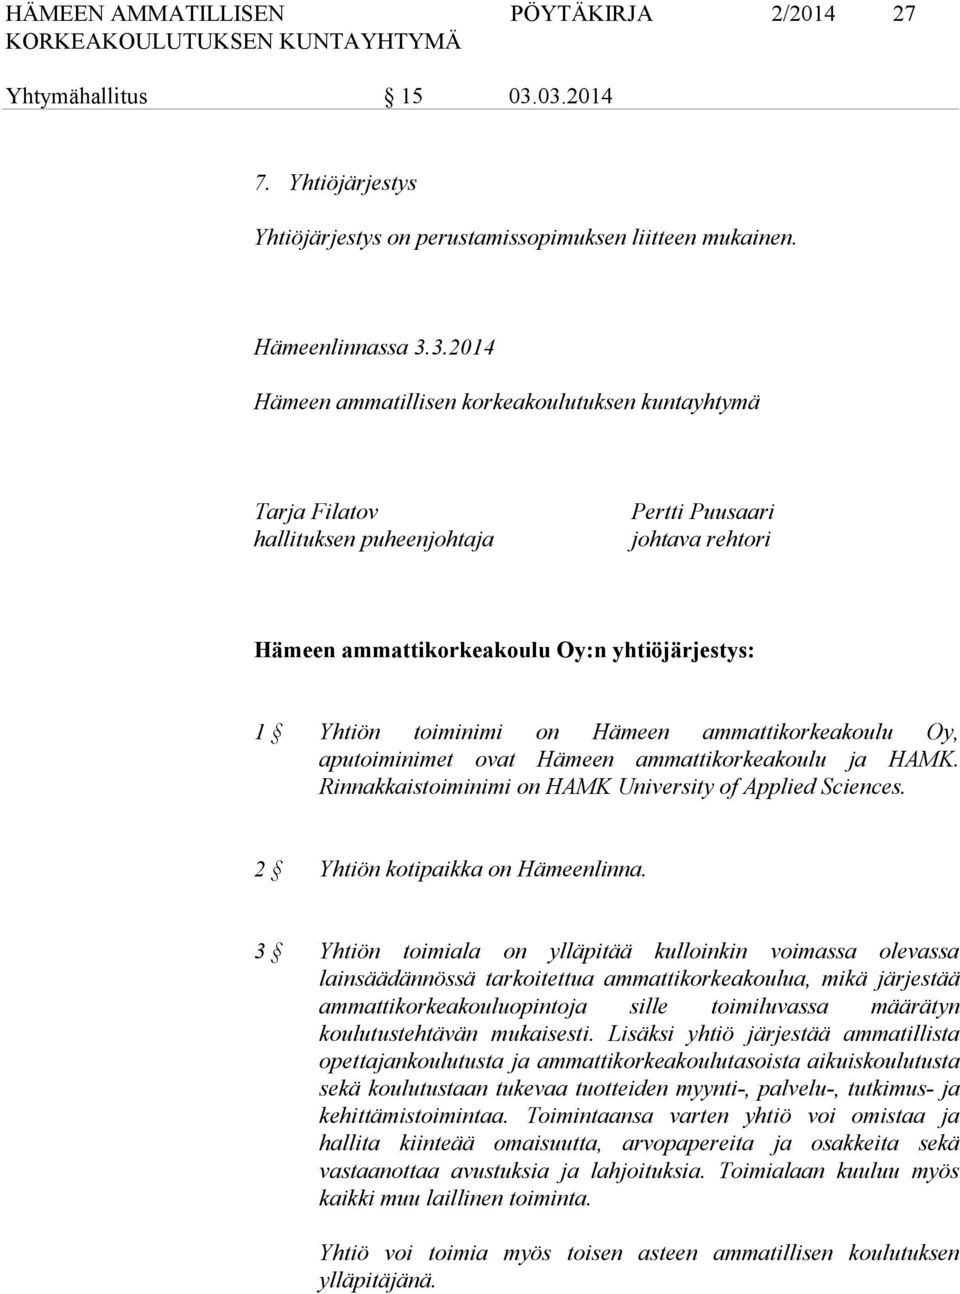 Pertti Puusaari johtava rehtori Hämeen ammattikorkeakoulu Oy:n yhtiöjärjestys: 1 Yhtiön toiminimi on Hämeen ammattikorkeakoulu Oy, aputoiminimet ovat Hämeen ammattikorkeakoulu ja HAMK.